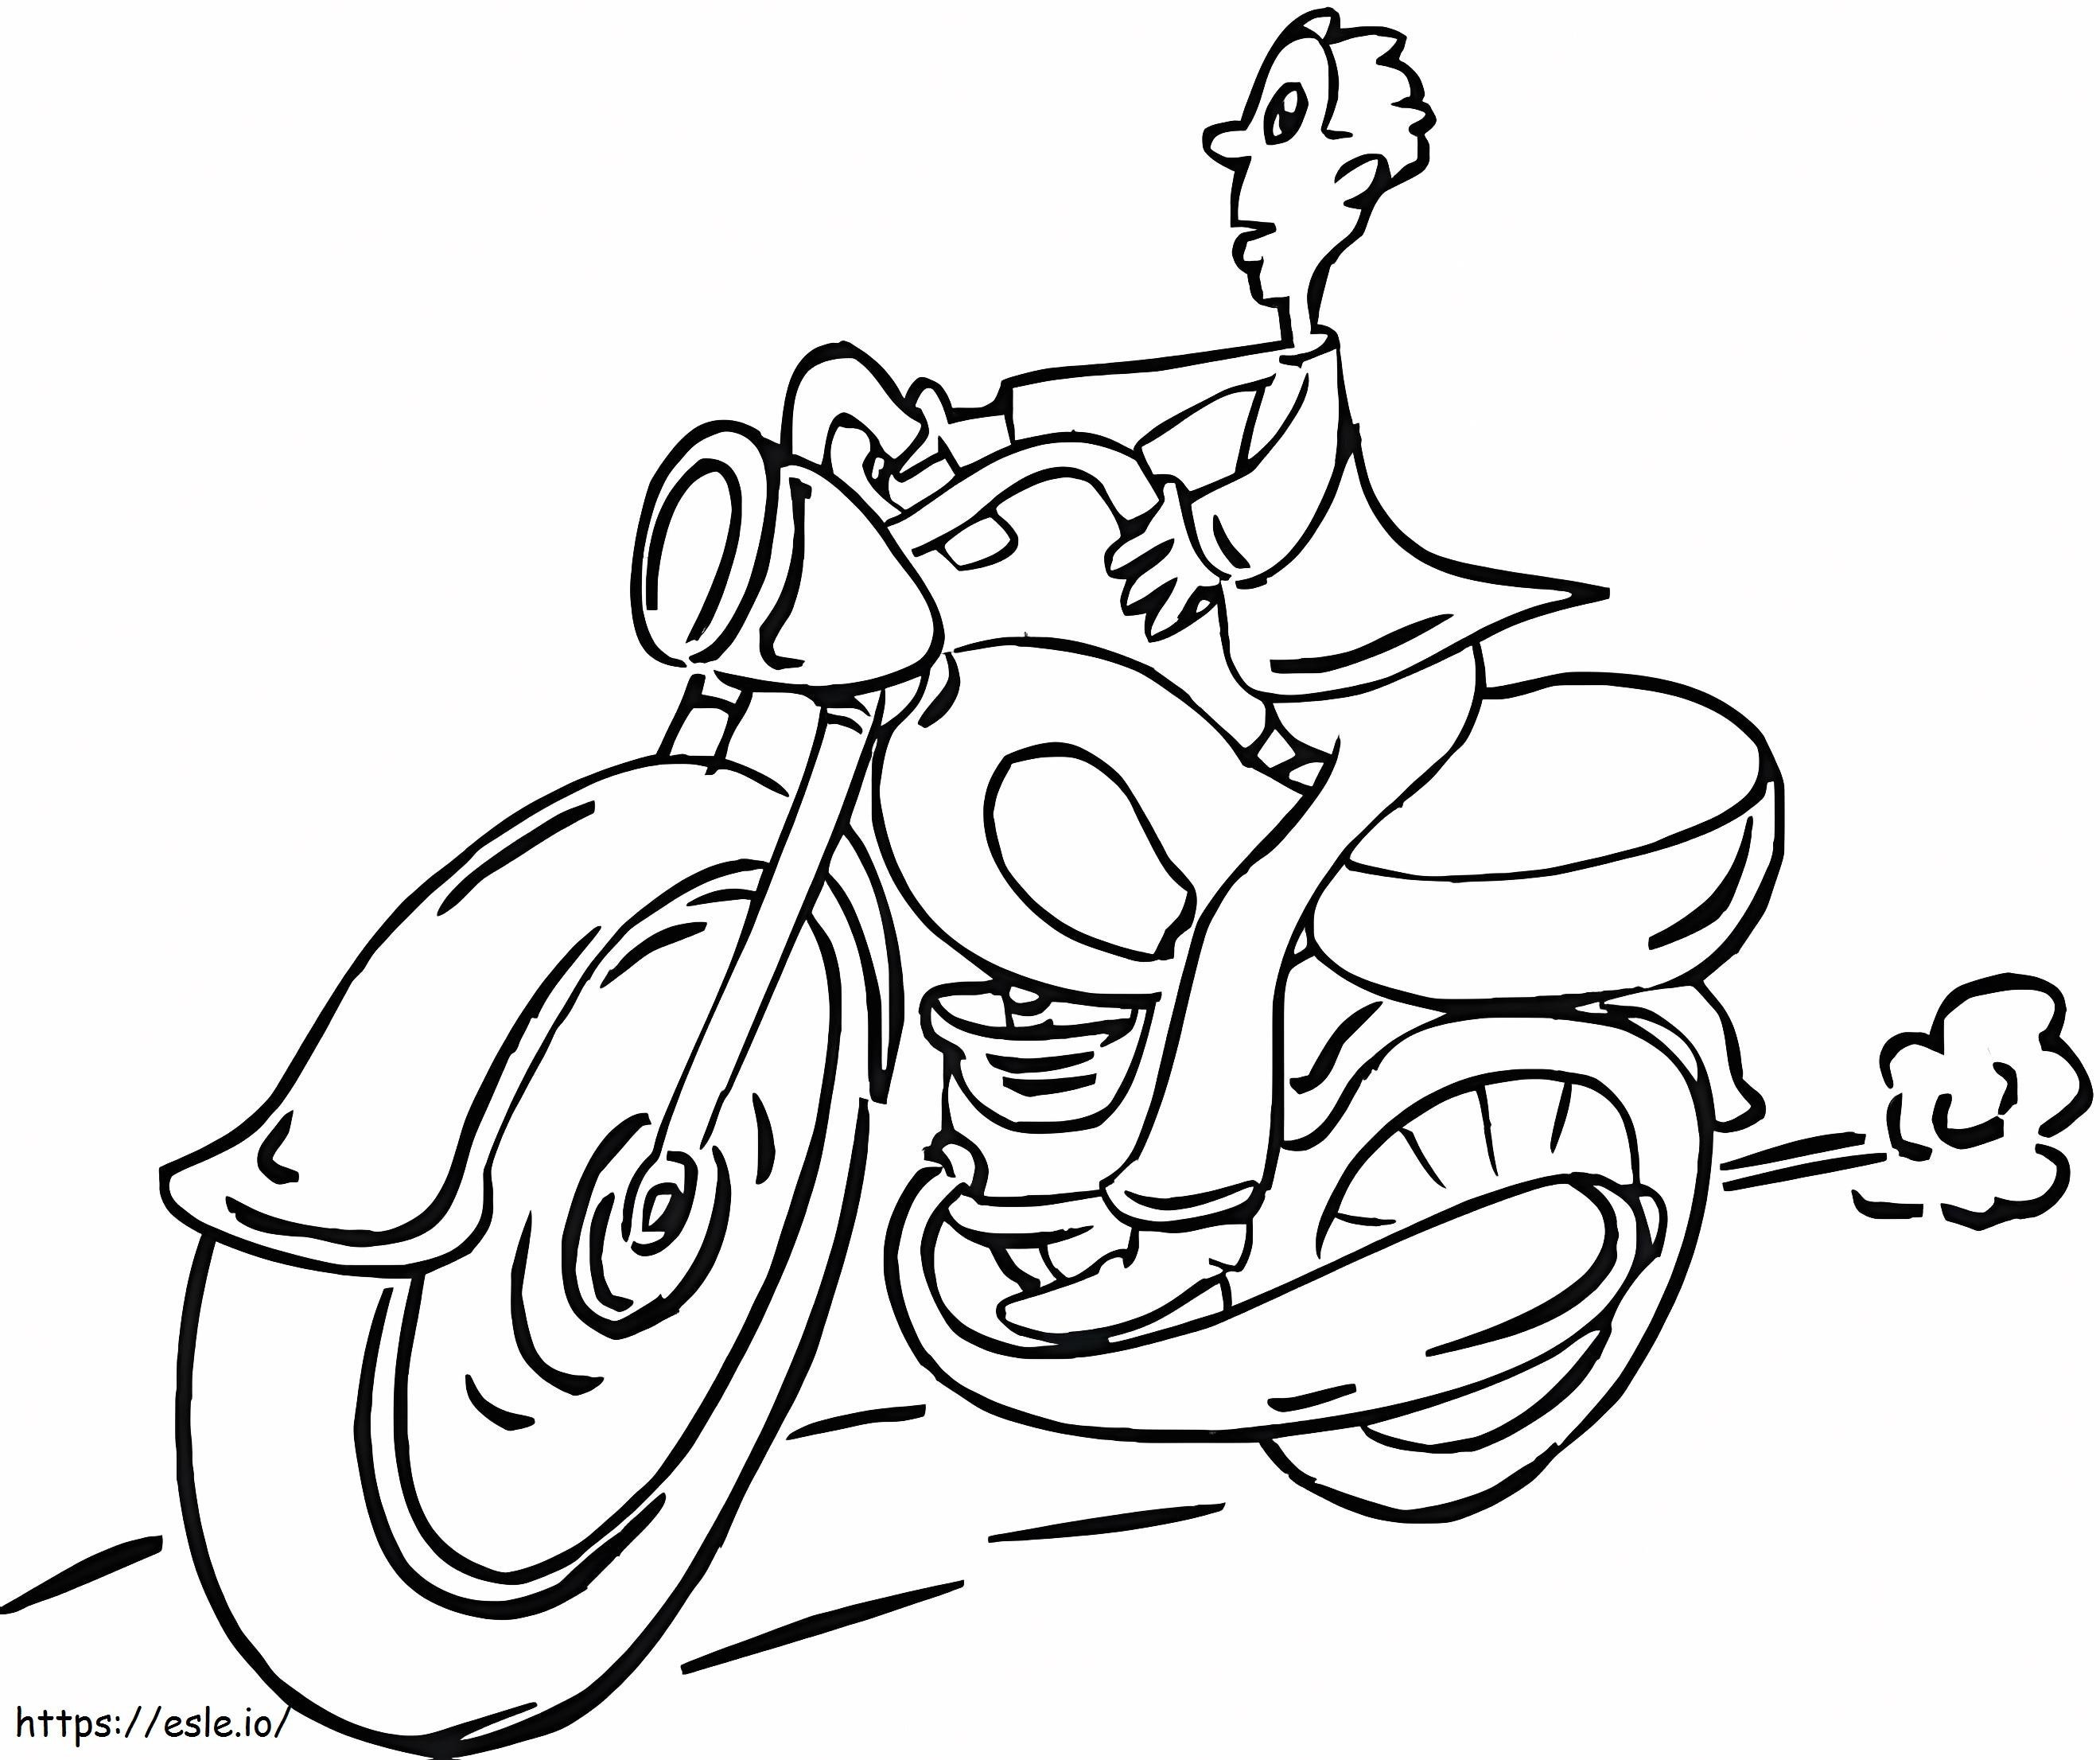 Mann auf Motorrad ausmalbilder